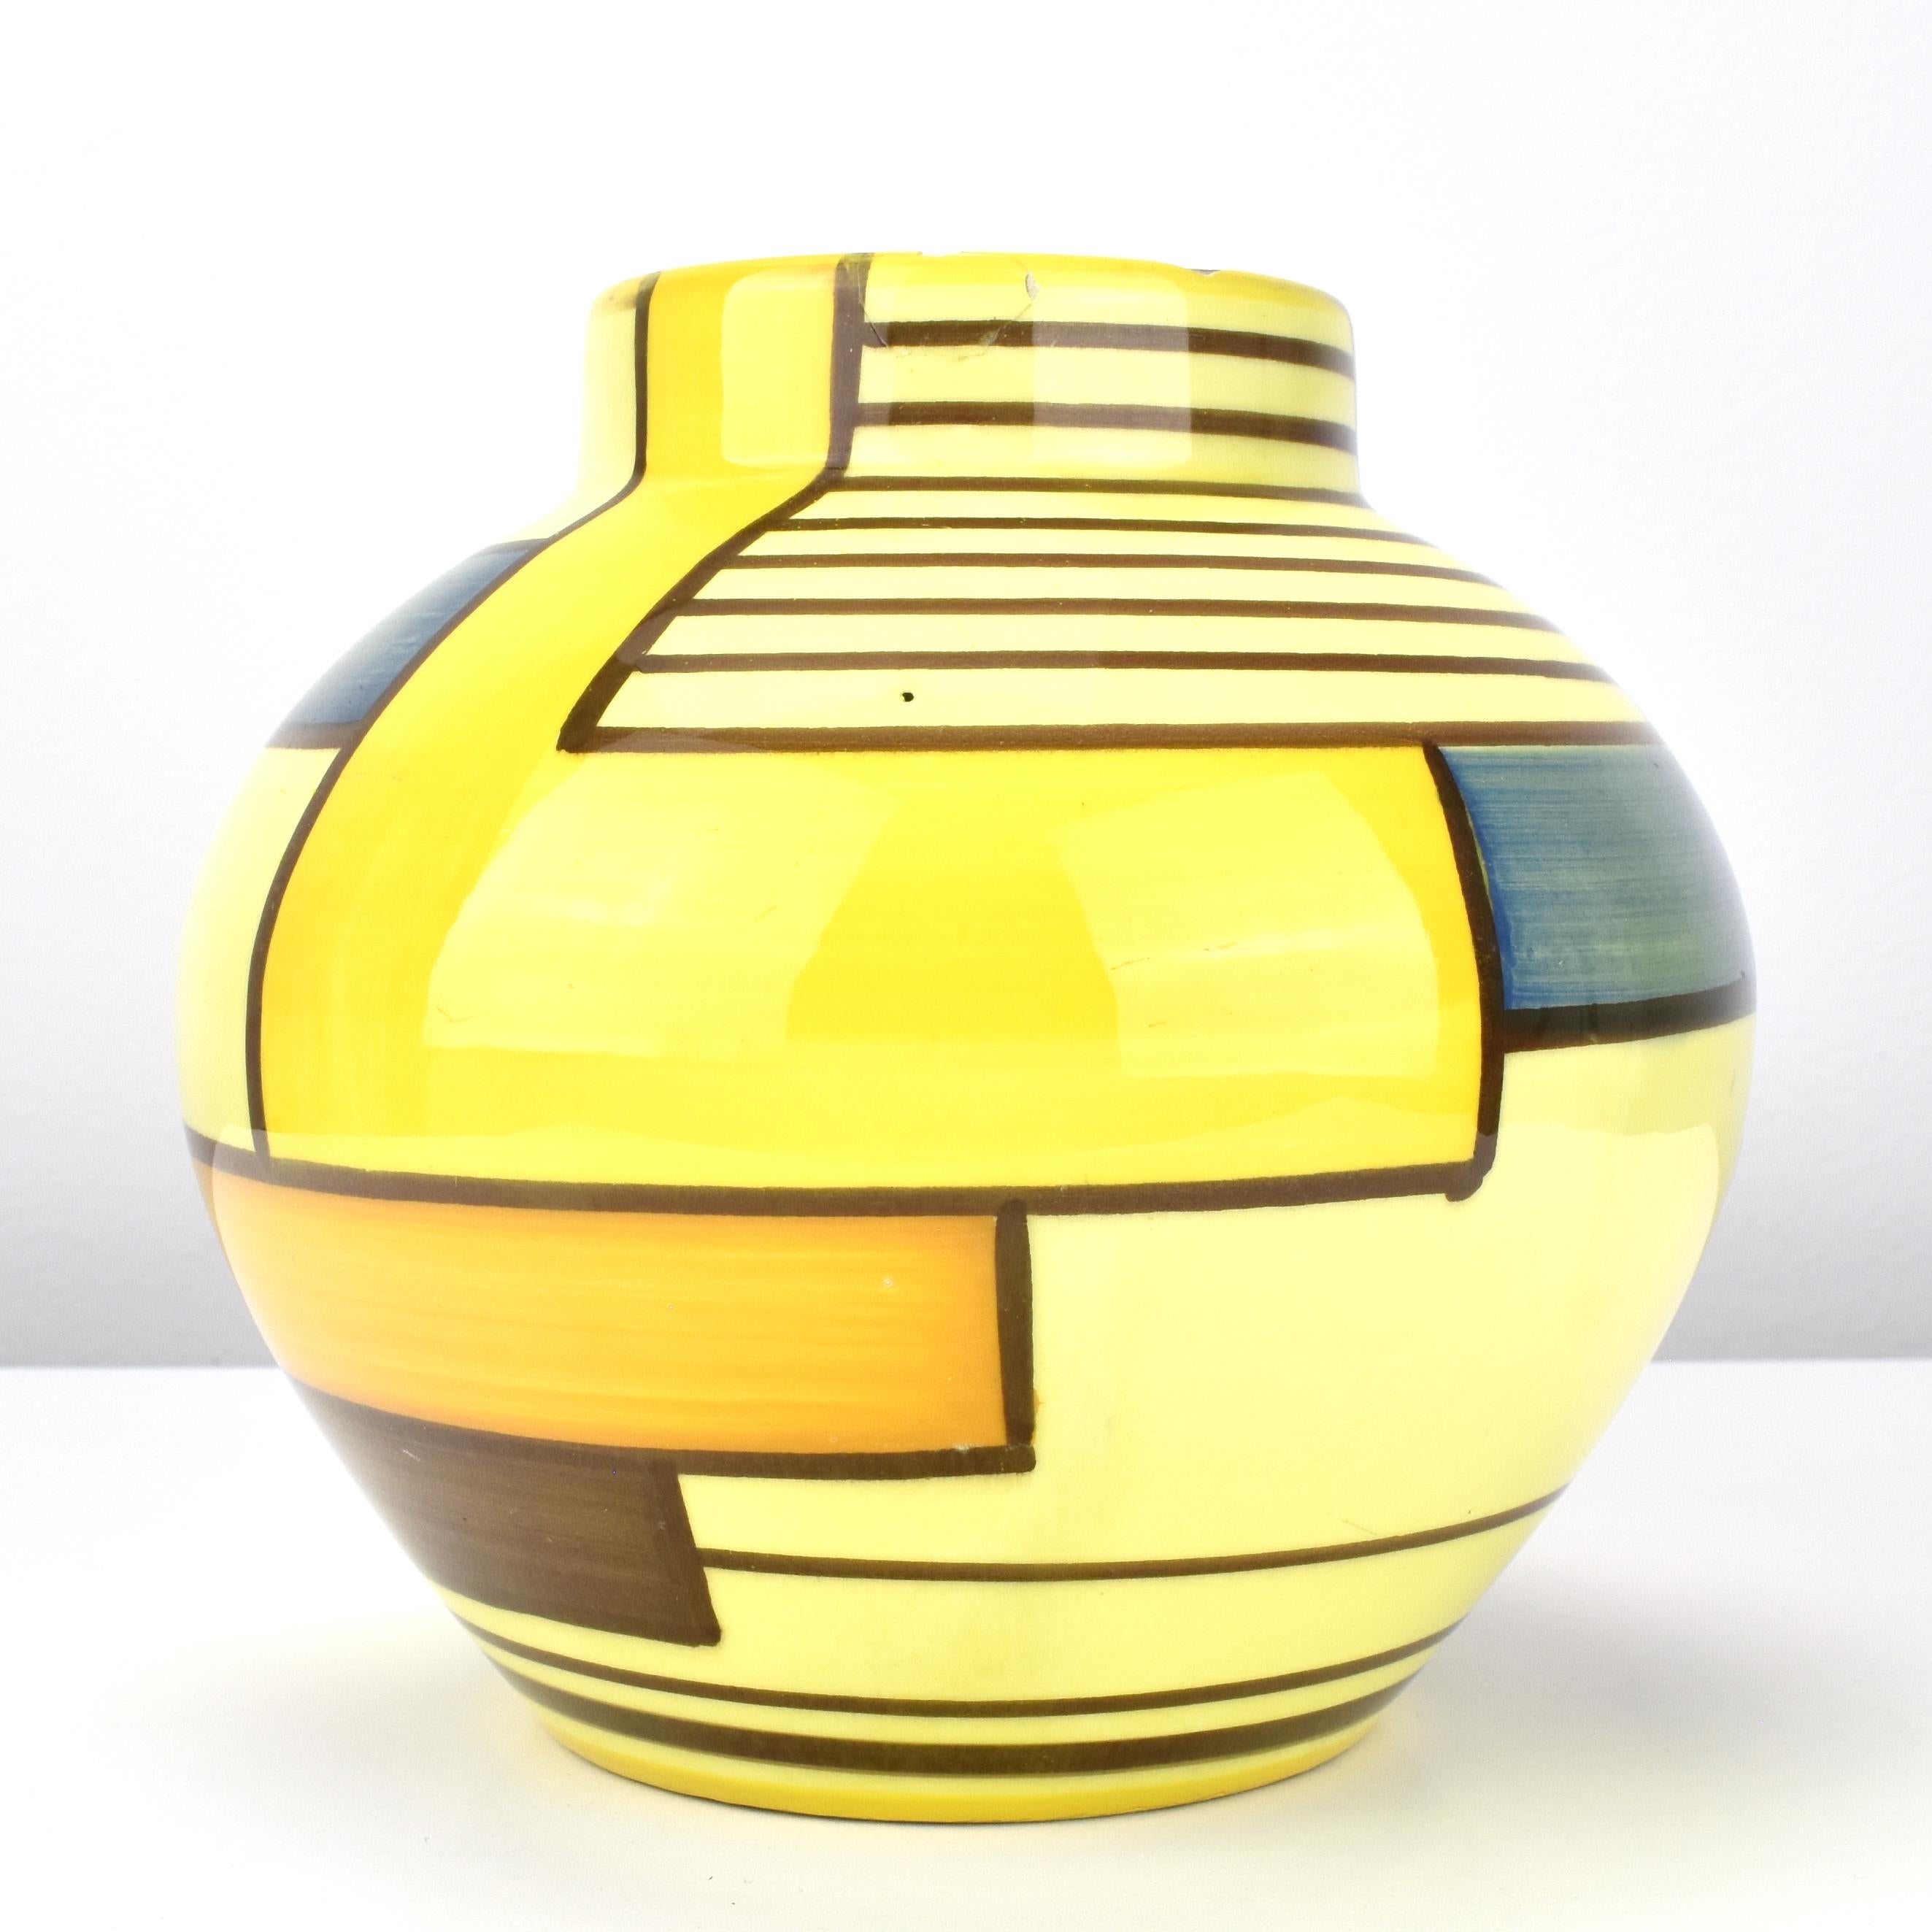 Diese Schramberg Eva Zeisel Mondrian Muster Art Deco Bauhaus Vase ist ein seltenes und sehr sammelwürdiges Stück Keramikkunst. Diese Vase wurde im frühen 20. Jahrhundert während der Art-Déco-Periode geschaffen, die durch kühne geometrische Formen,